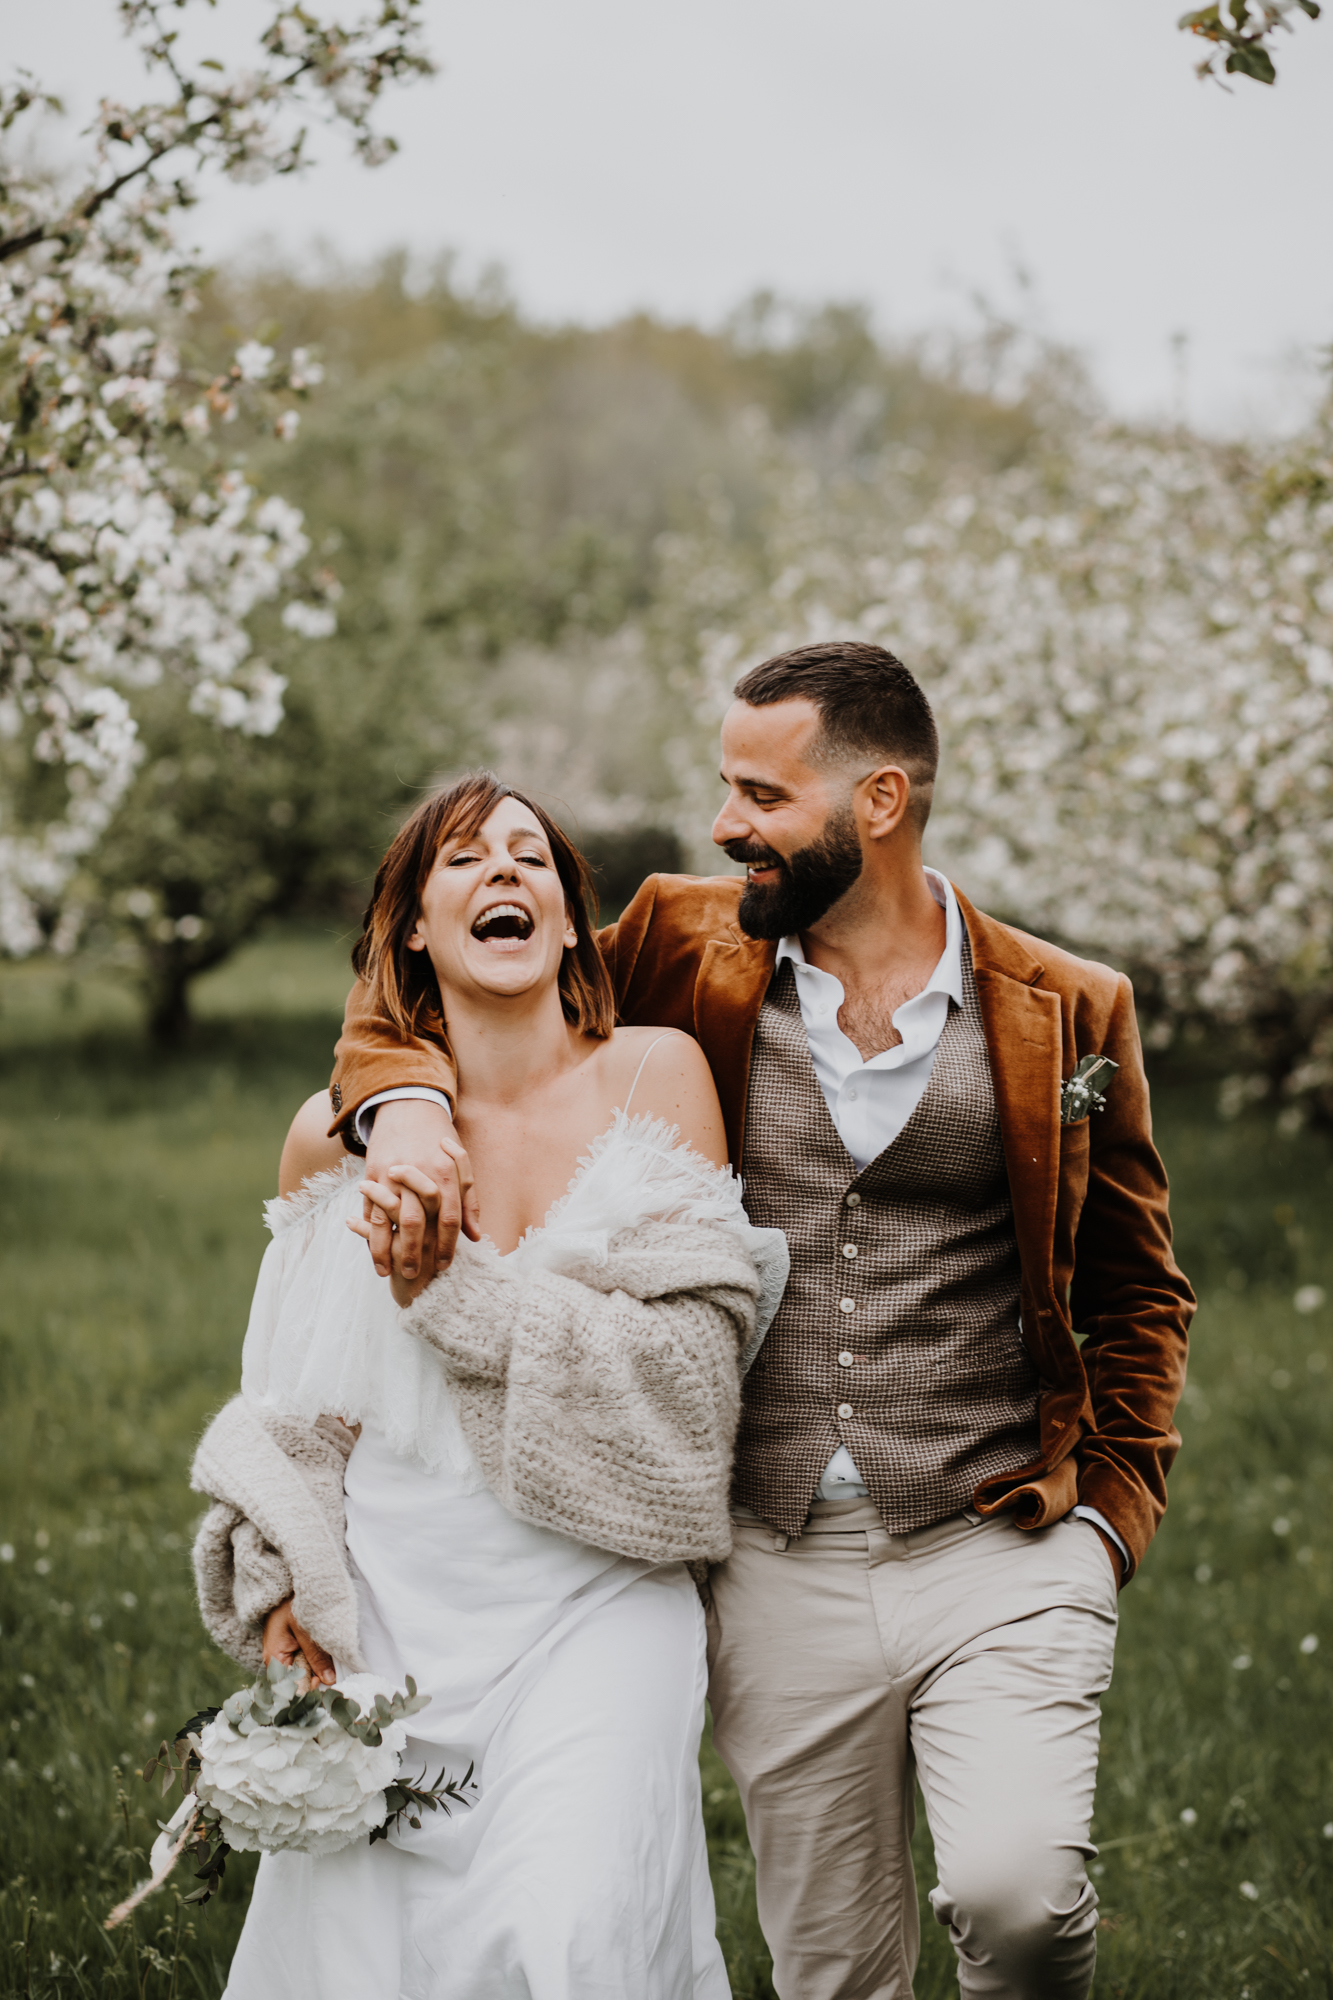 les mariés marchent en riant dans un verger en fleurs domaine saint loup